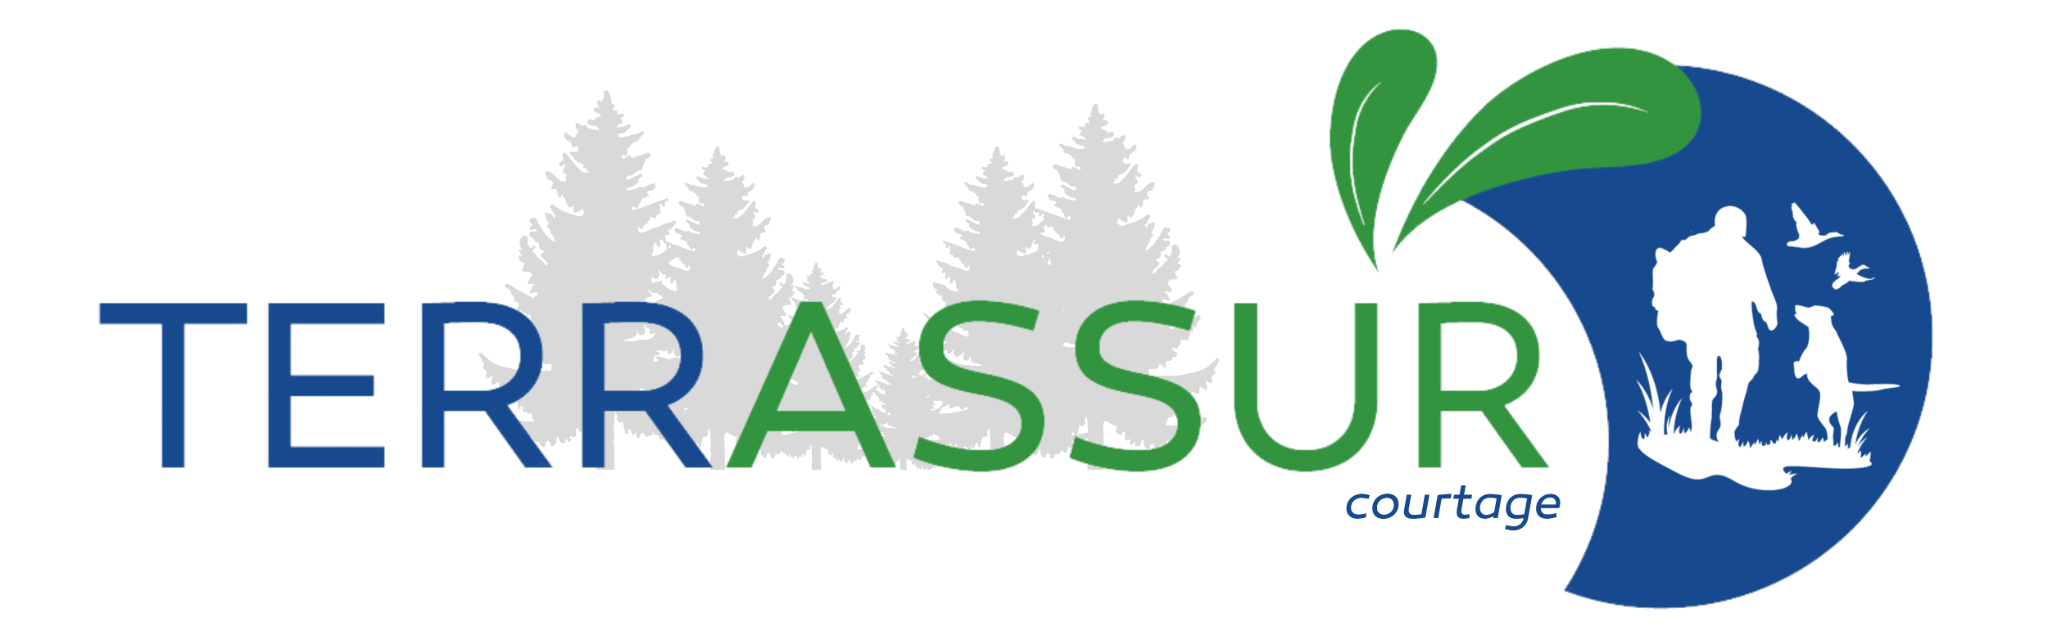 Terrassur-Courtage logo